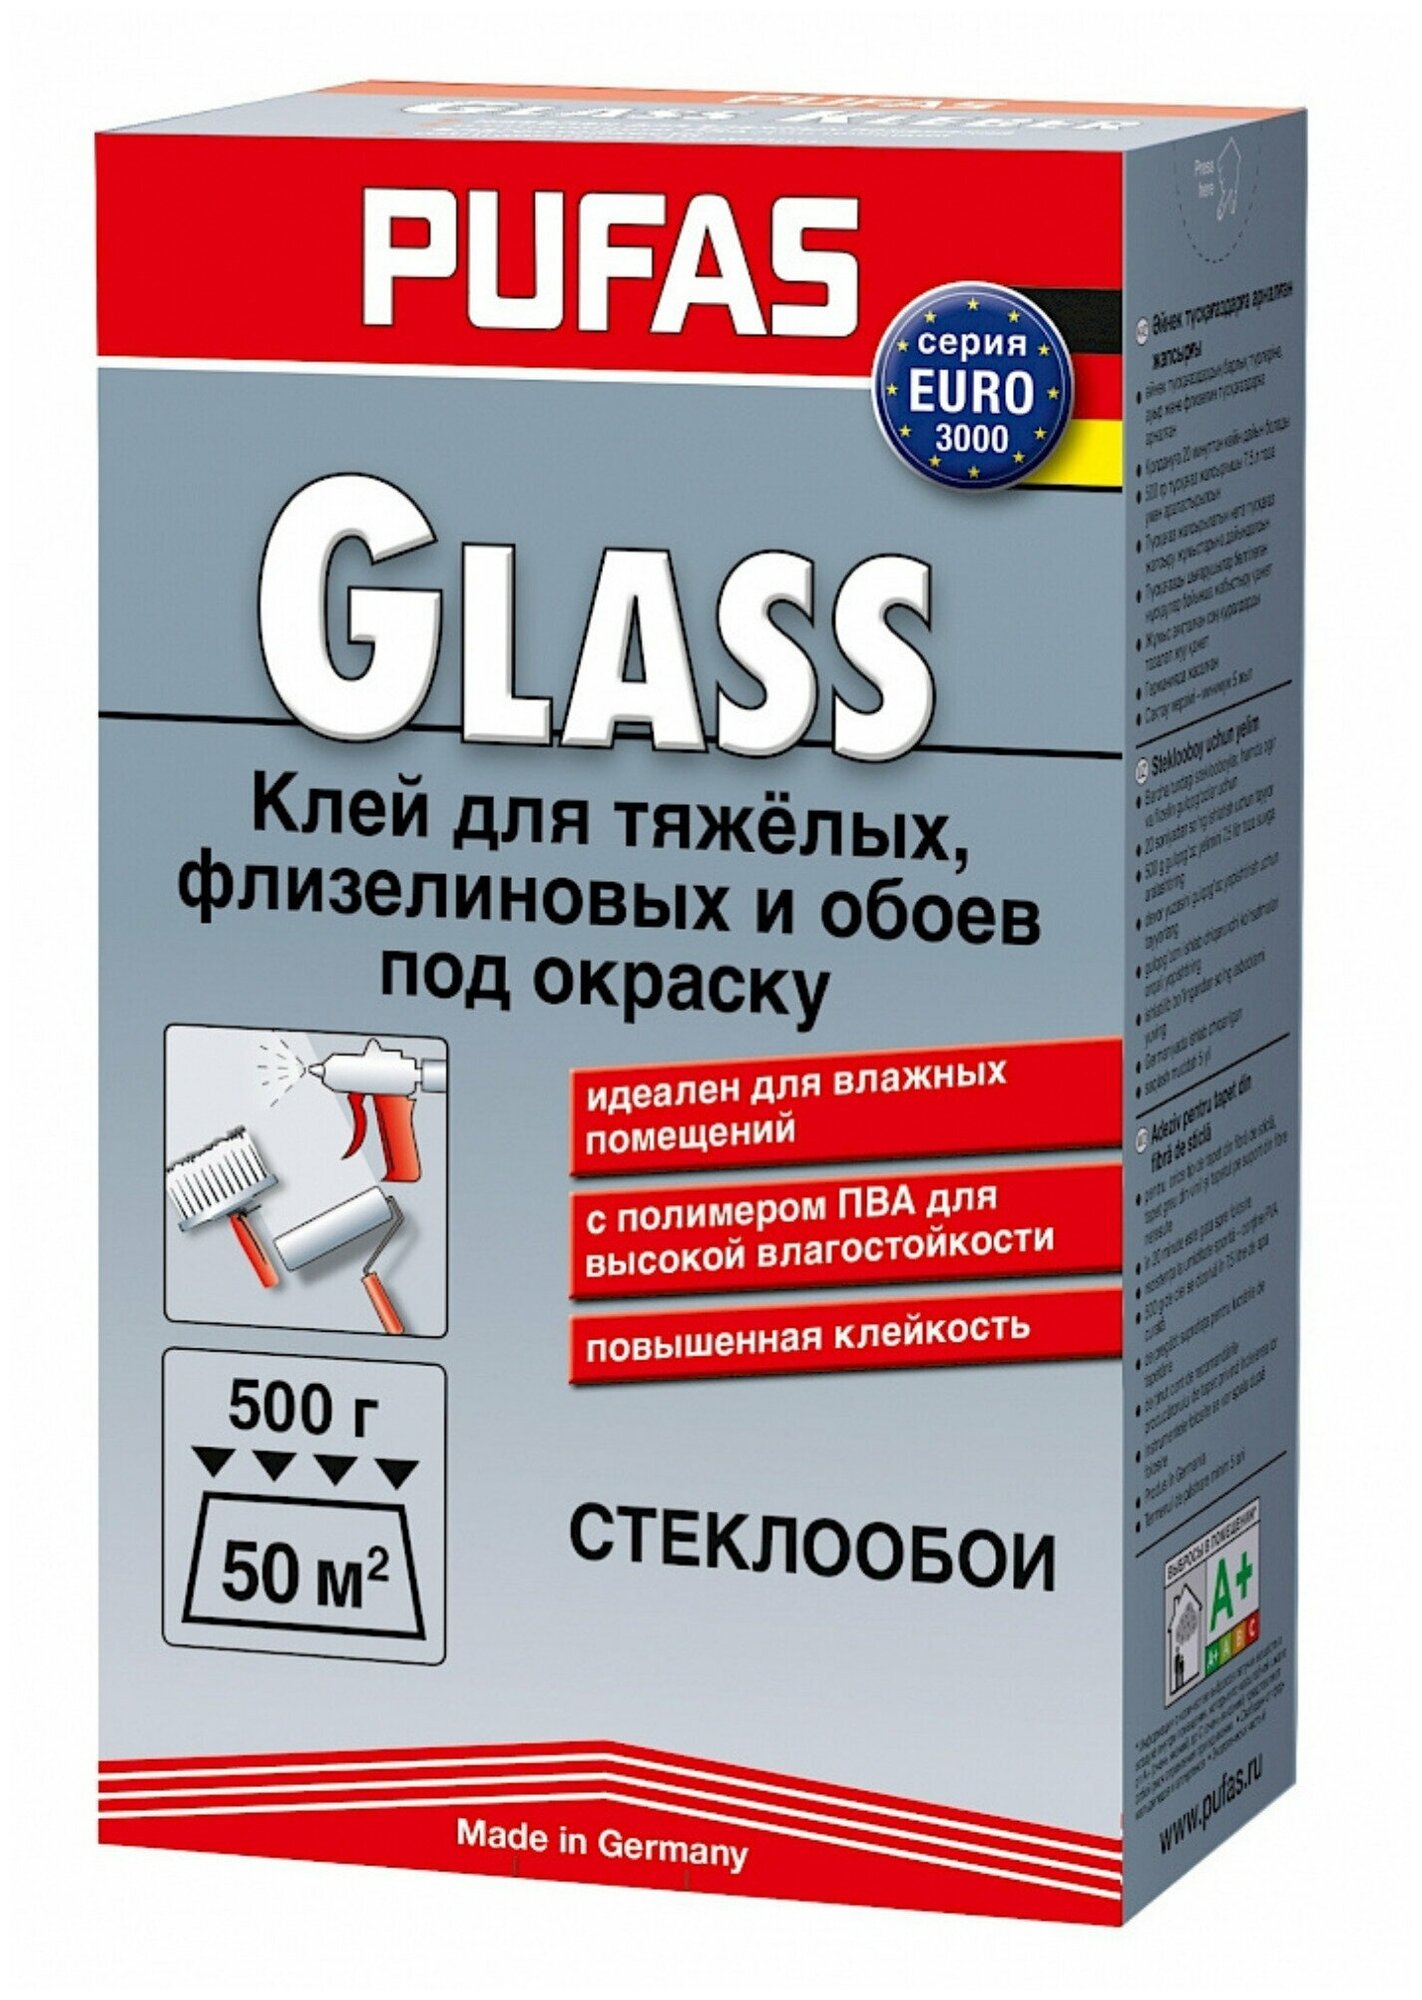 Pufas EURO 3000 Glass Клей для обоев флизелиновый, обойный клей под стеклообои и других тяжелых покрытий, 500 г